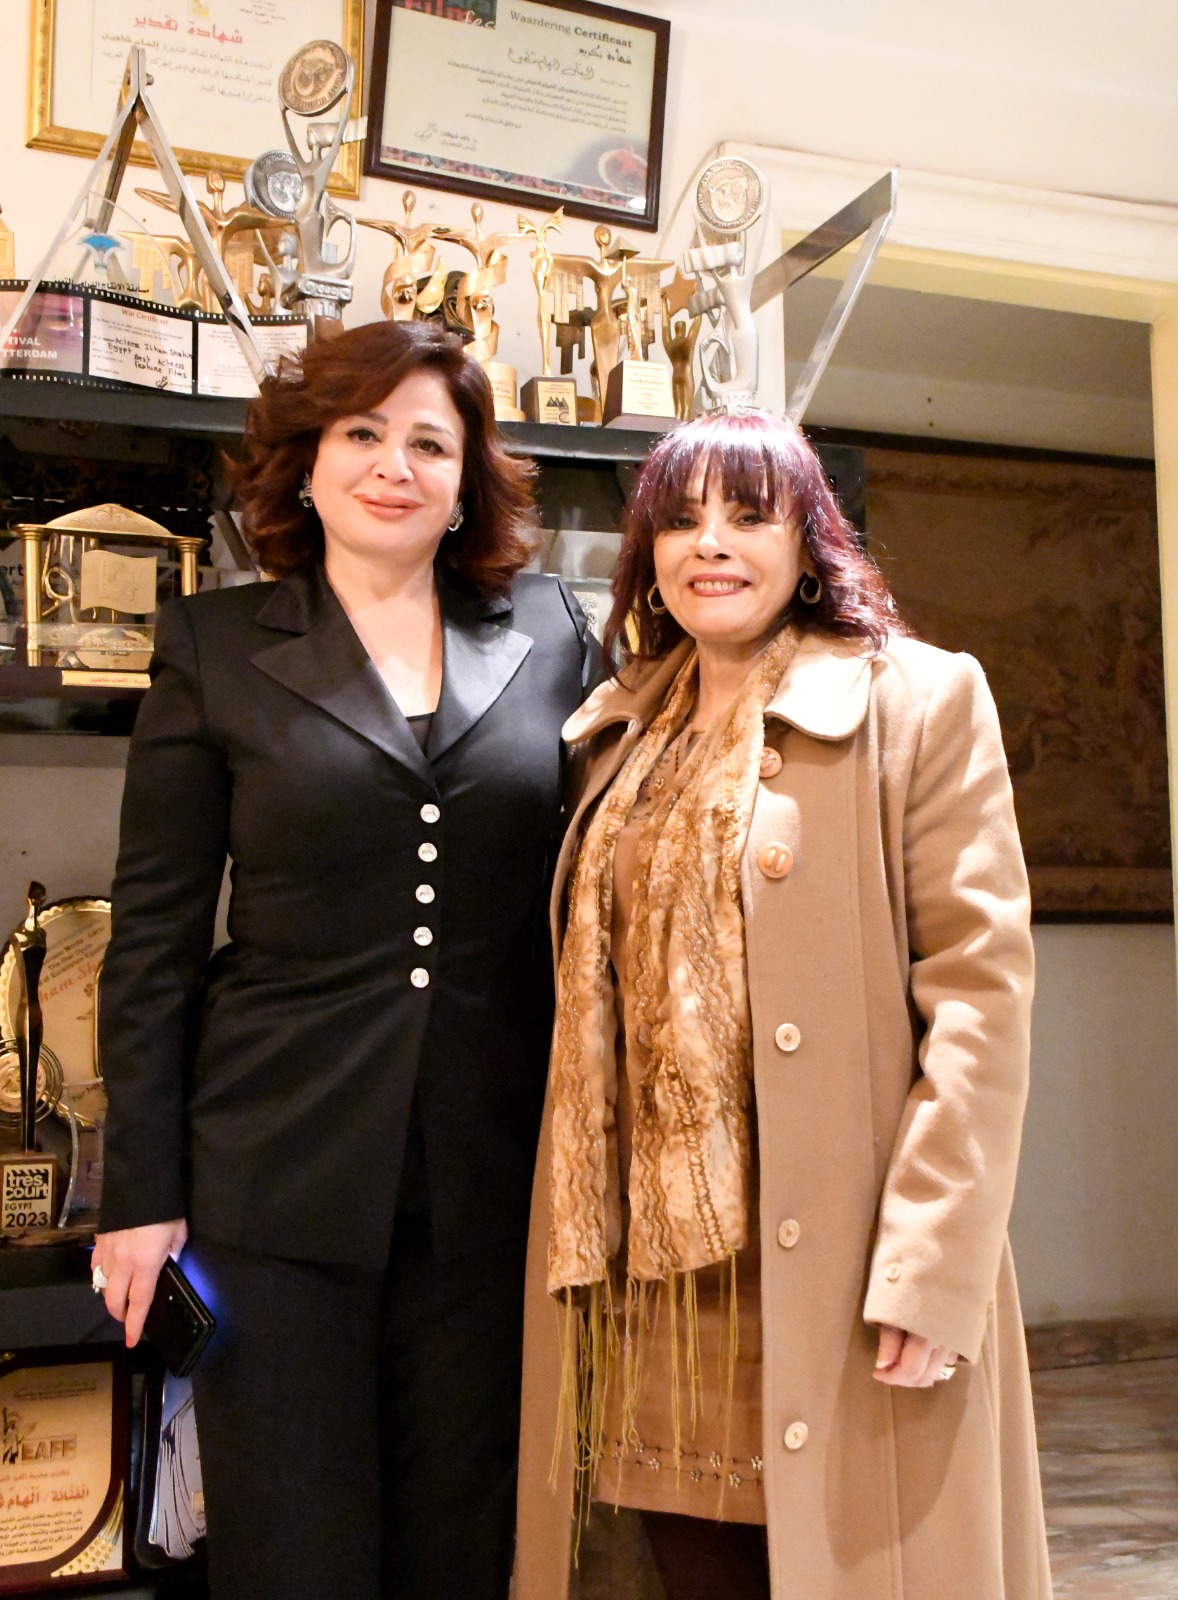 إلهام شاهين الرئيسة الشرفية للدورة الثانية لمهرجان إيزيس الدولي لمسرح المرأة (1)